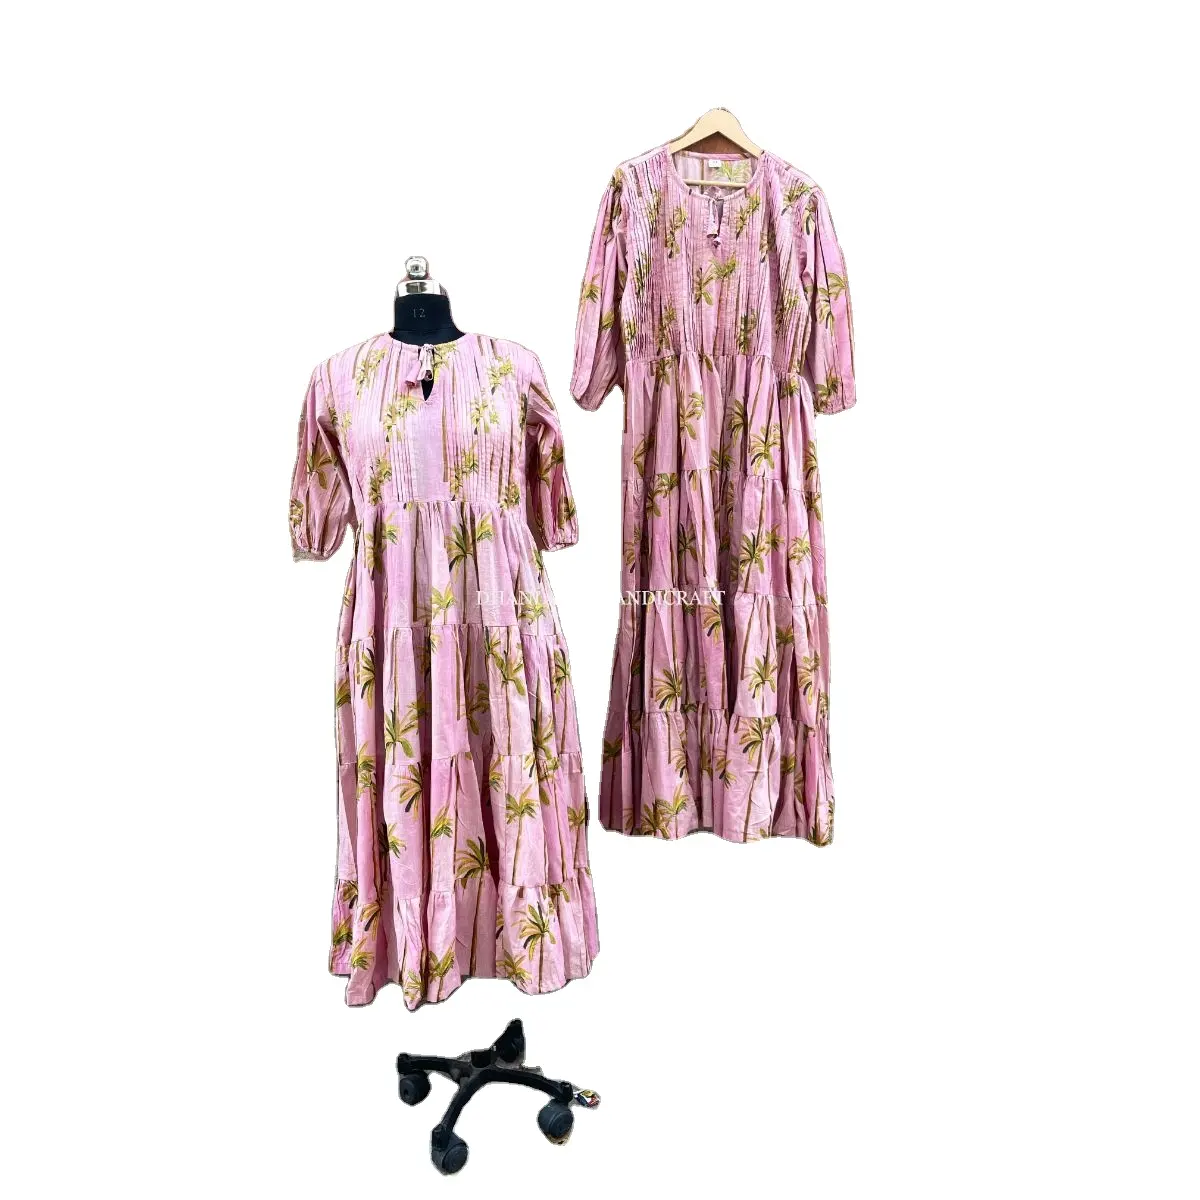 المرأة البوهيمي الملابس الجملة مصمم اللباس القطن الصيف قماش مطبوع يدوي طباعة الهندي تونك شاطئ ارتداء